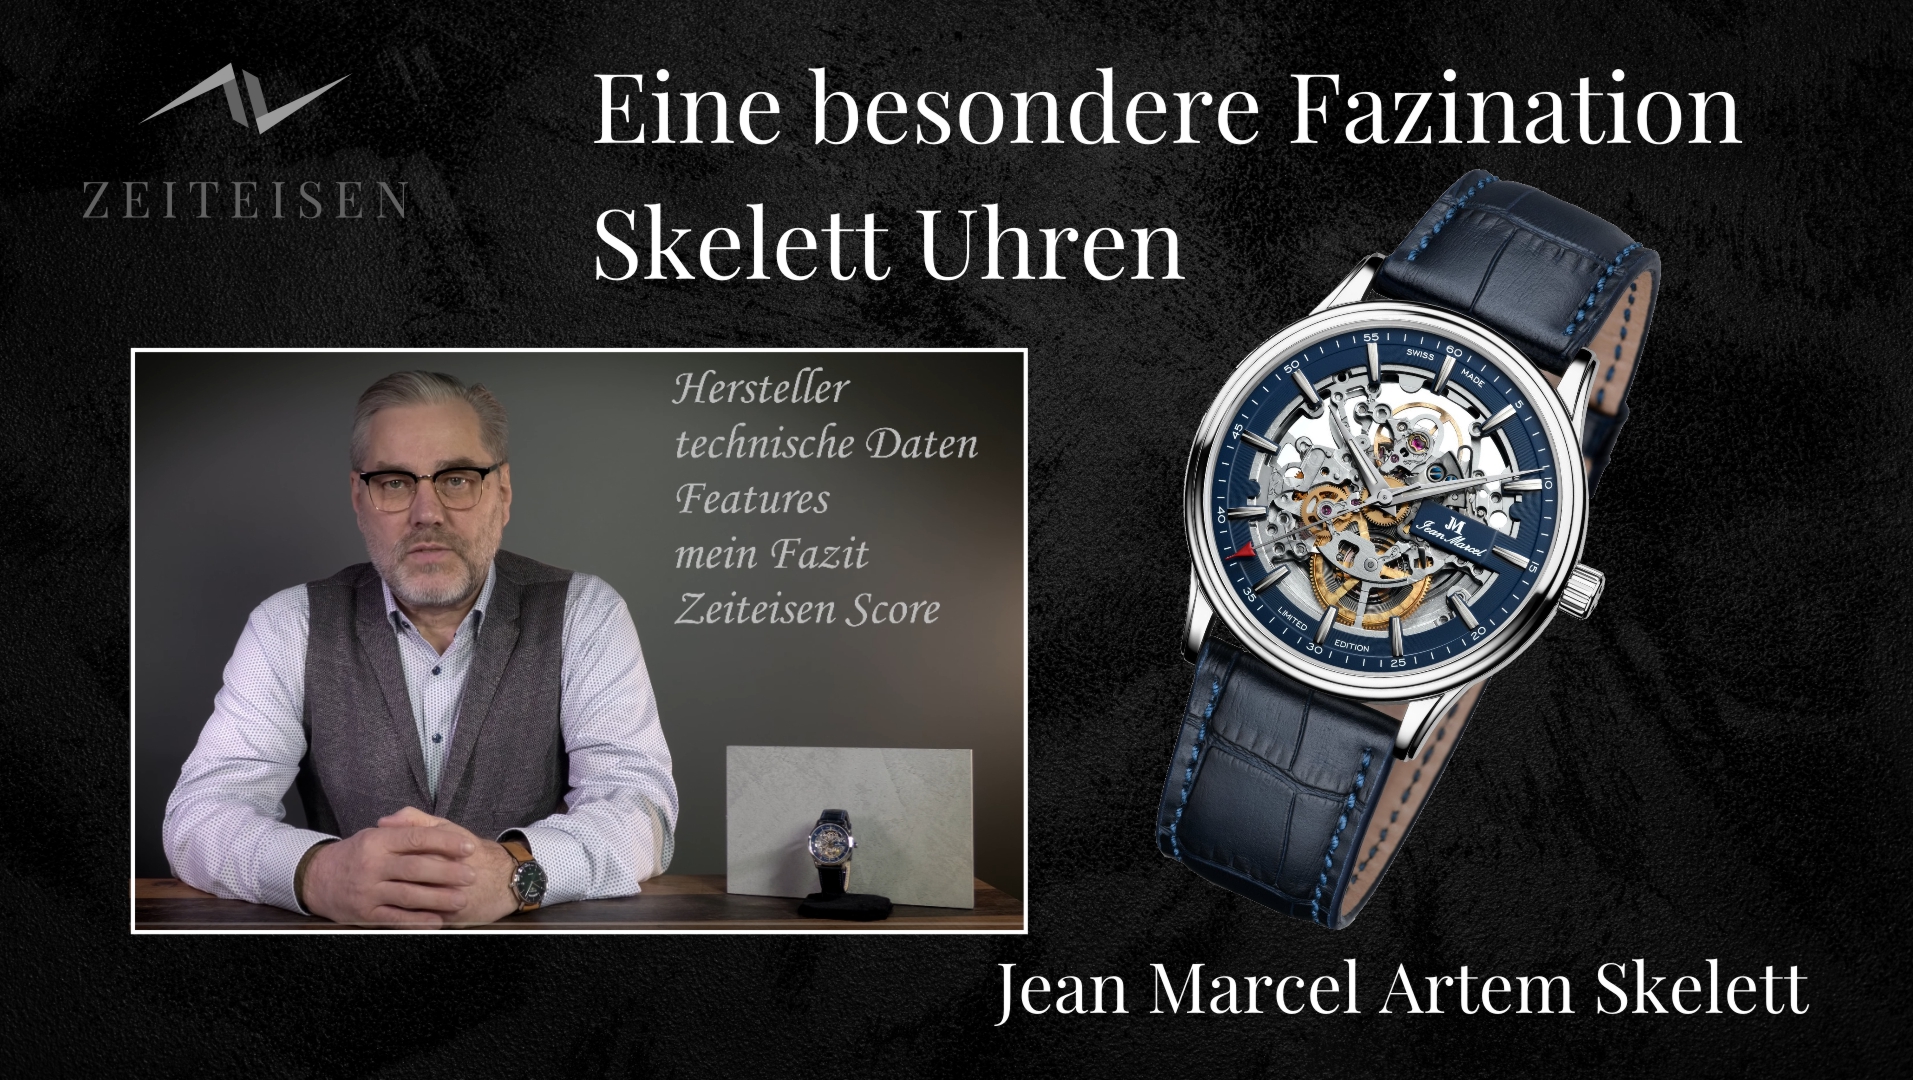 Video zur Uhrenvorstellung der Jean Marcel Artem Skelett